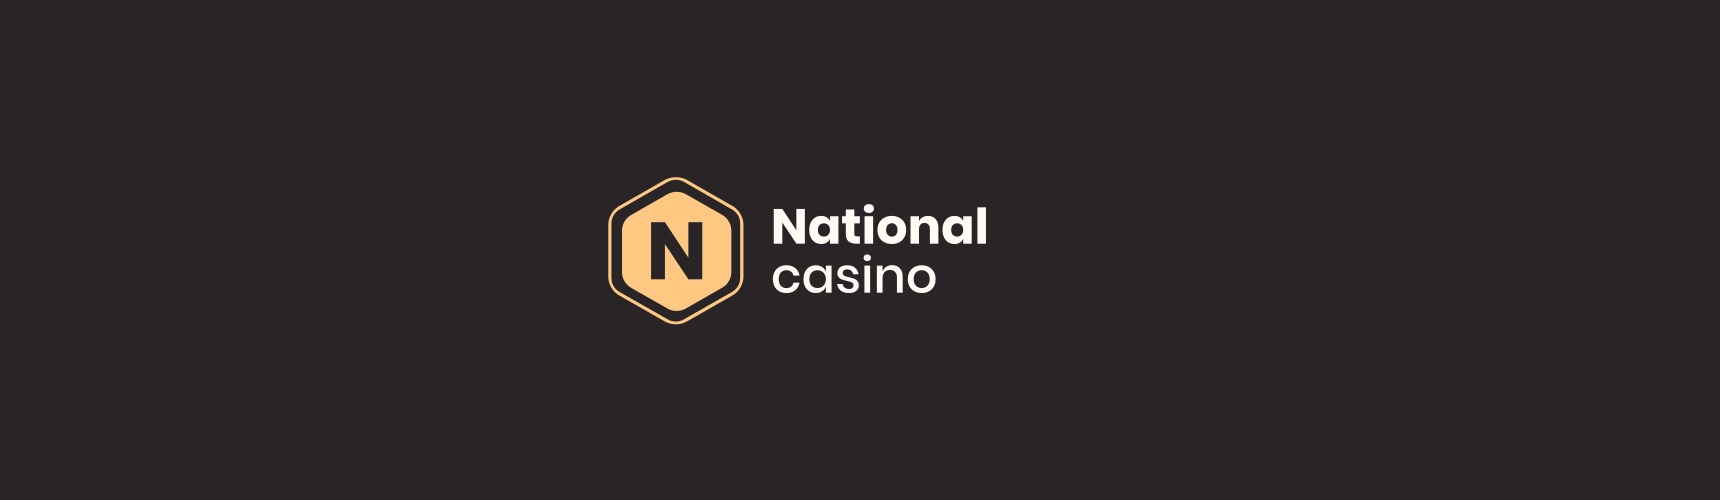 Wygląd National Casino zachęca do online gry oraz ułatwia zdobywanie bonusów